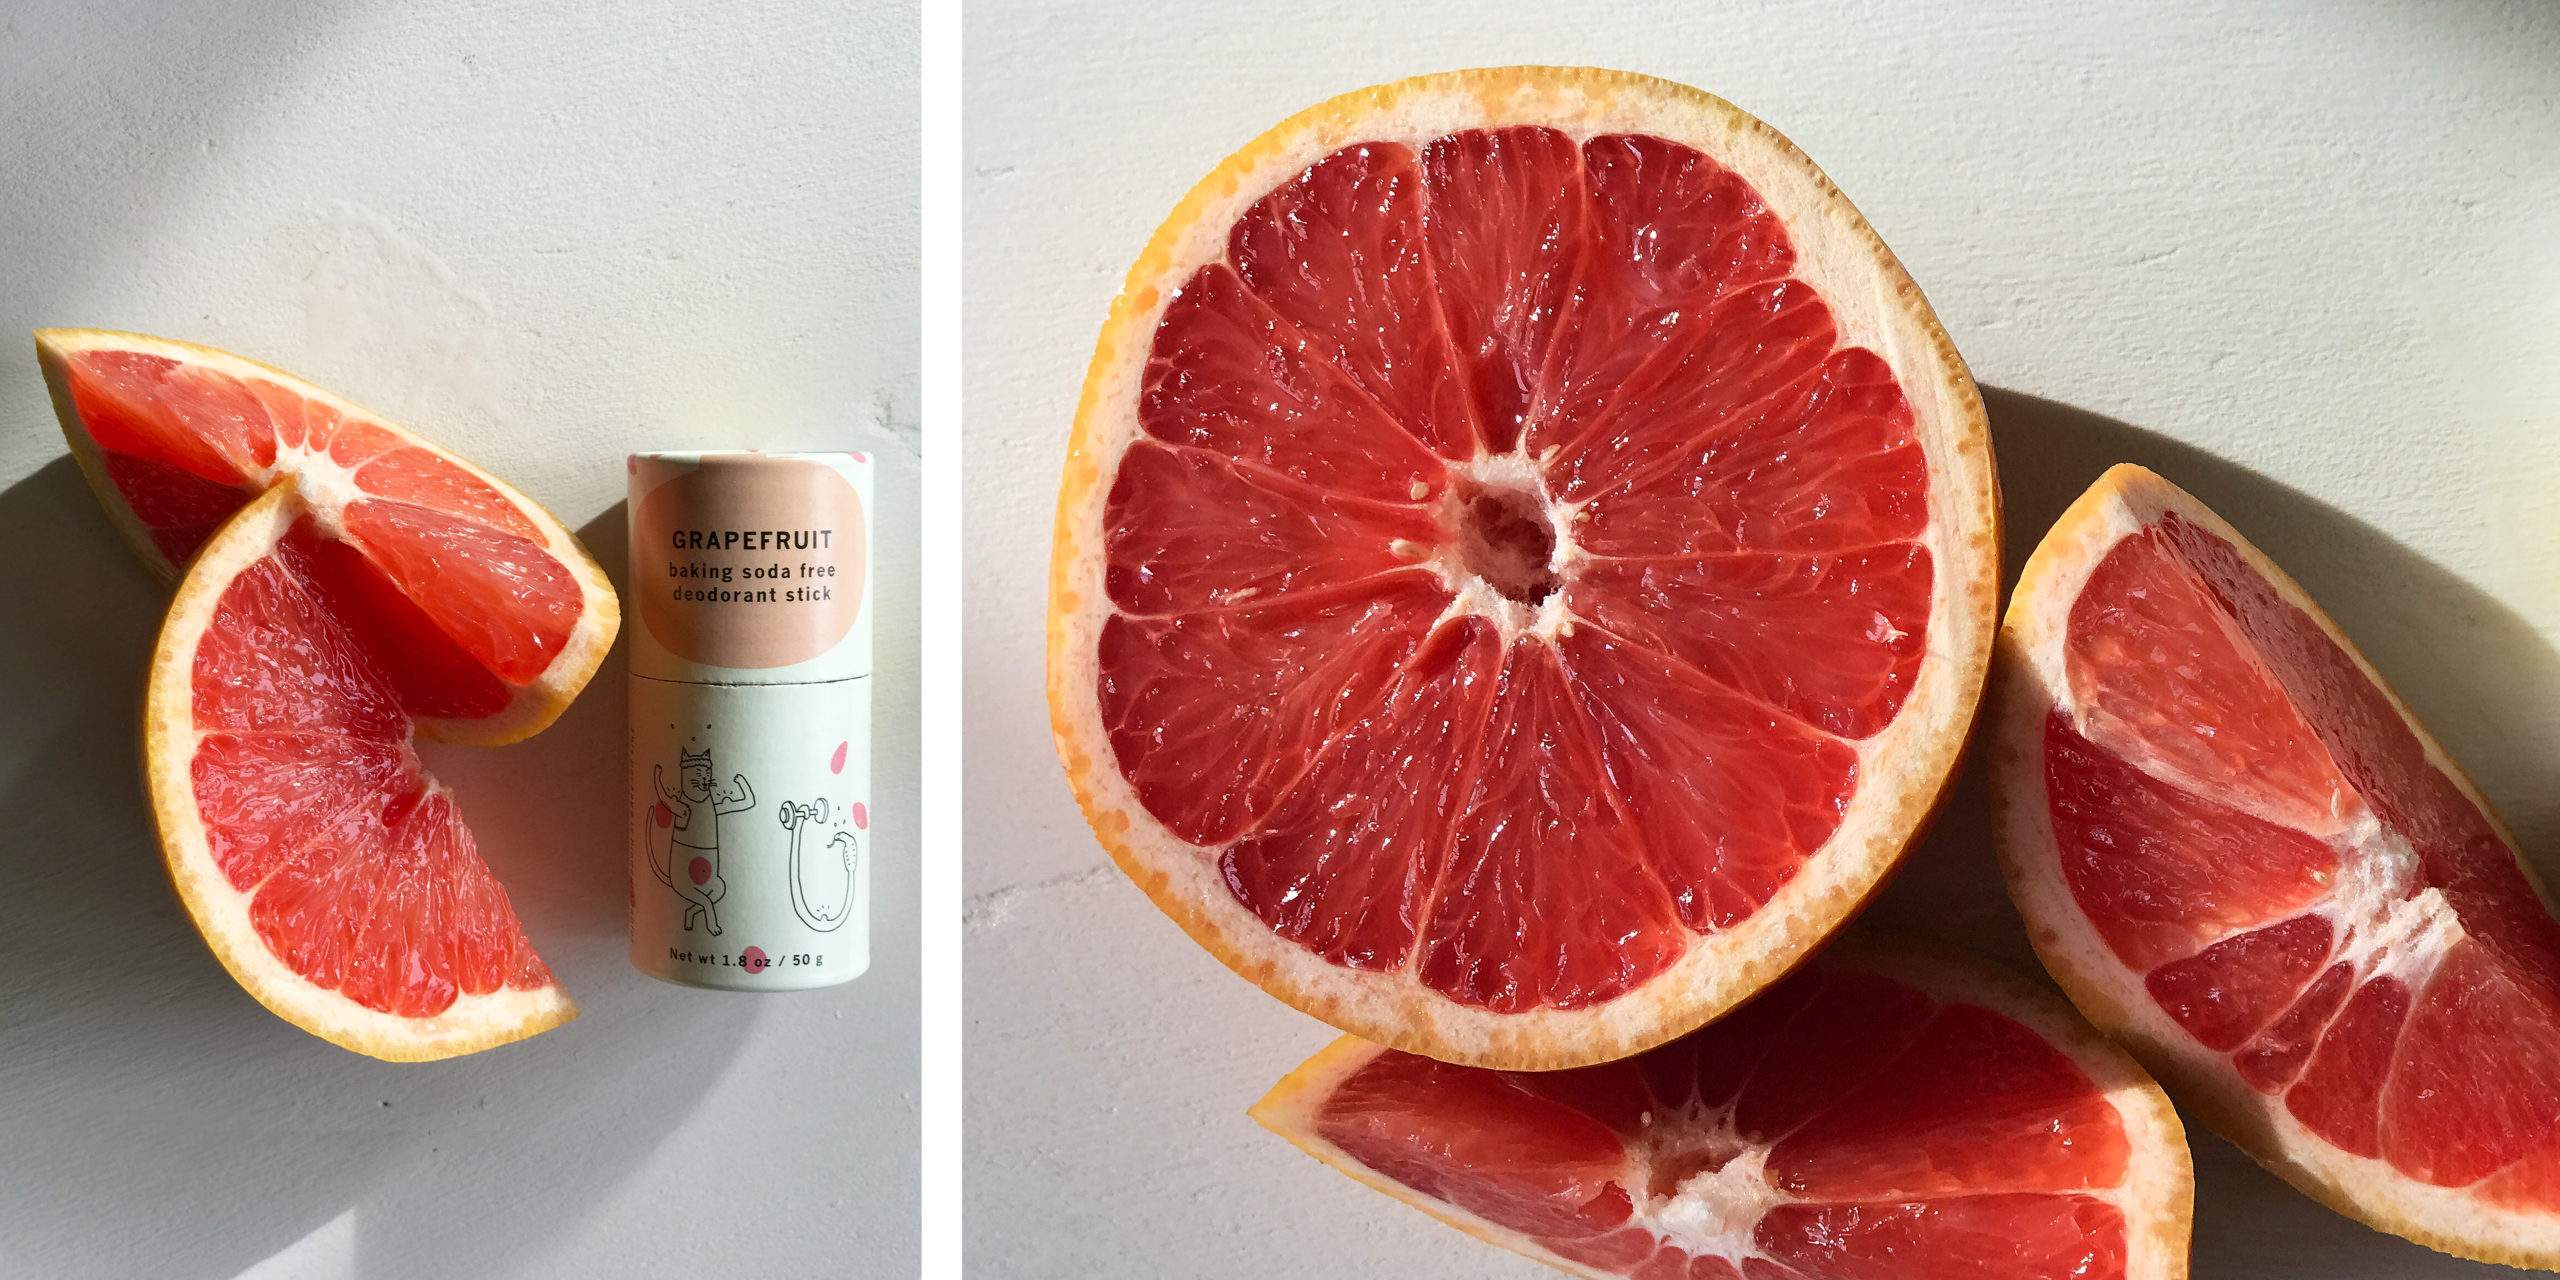 grapefruit deodorant stick